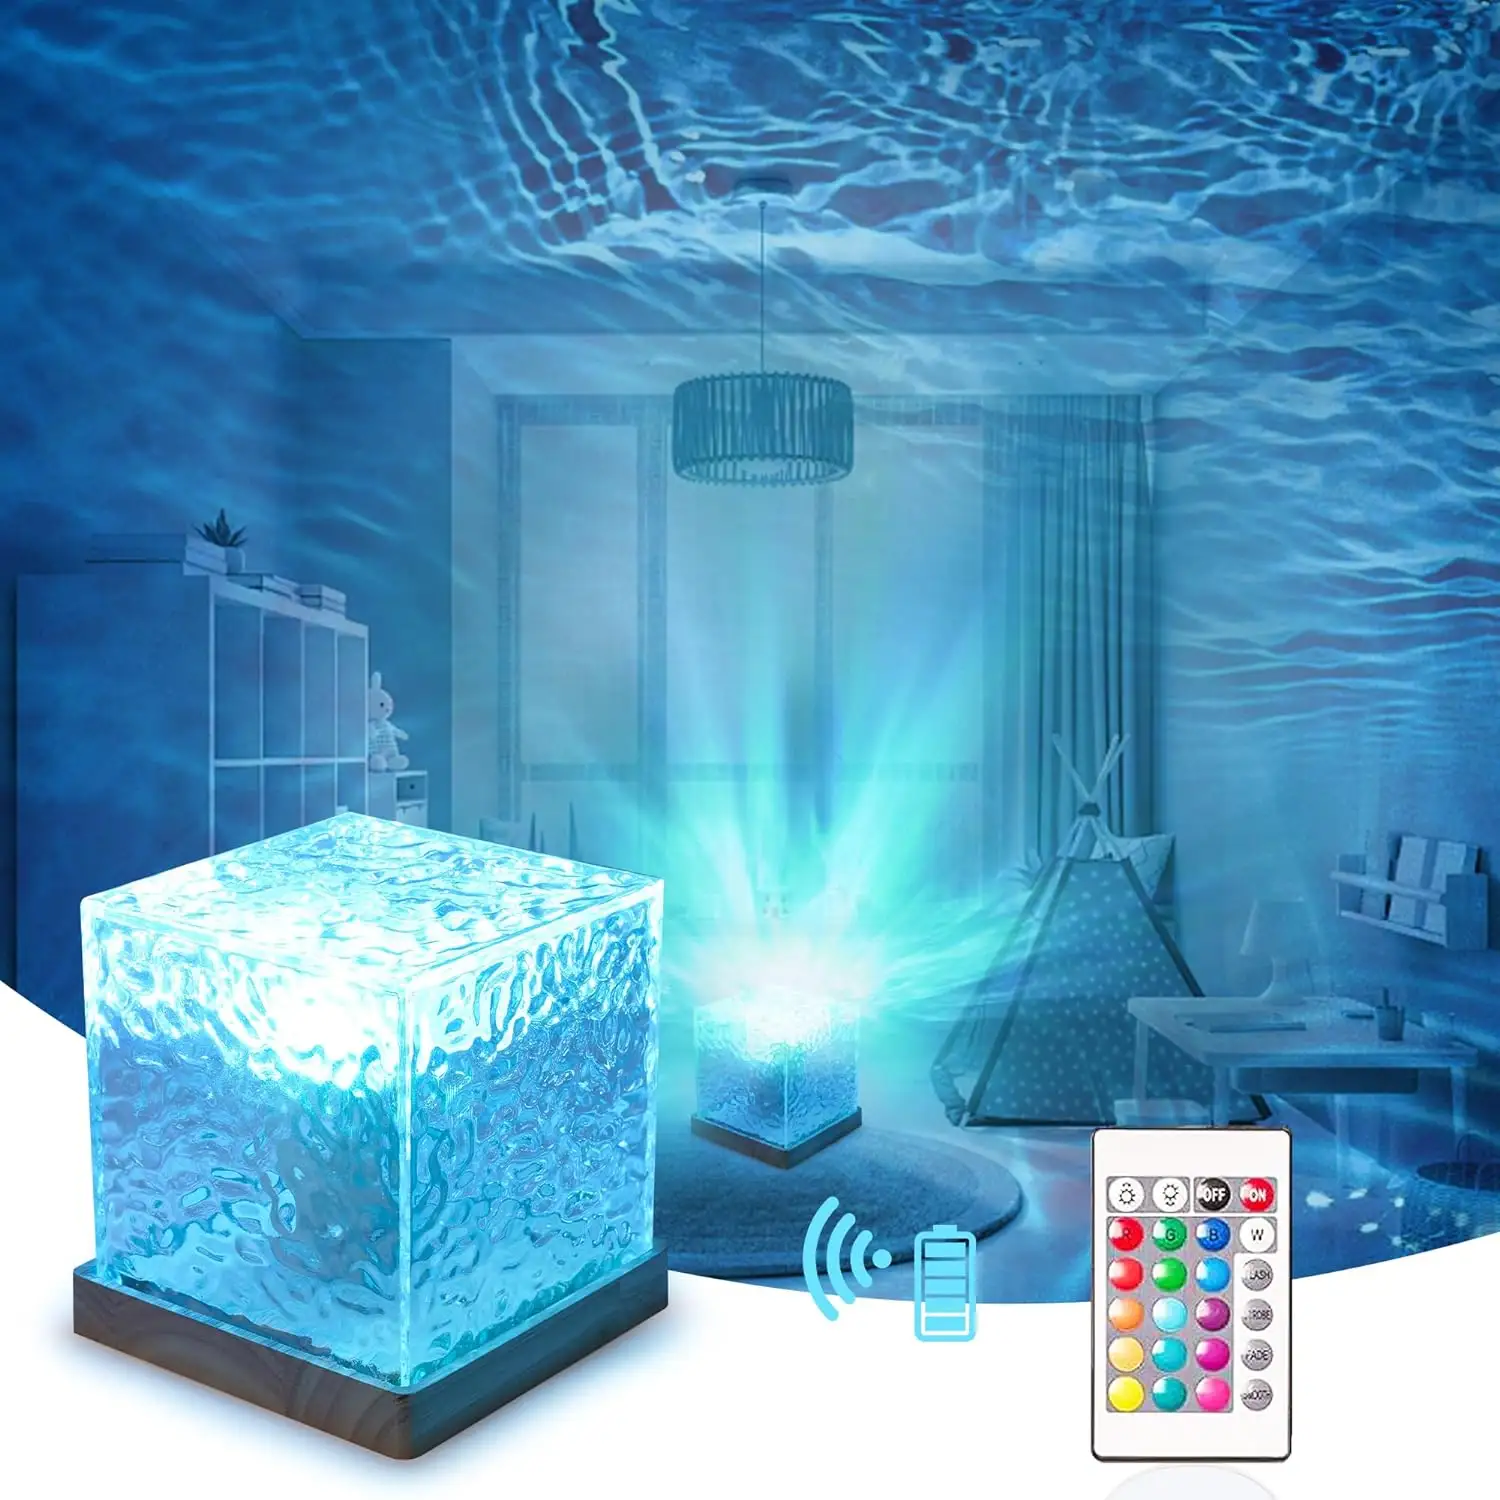 3D 16 색 회전 크리스탈 오로라 램프 블루 다이나믹 워터 리플 큐브 램프 테이블 야간 램프